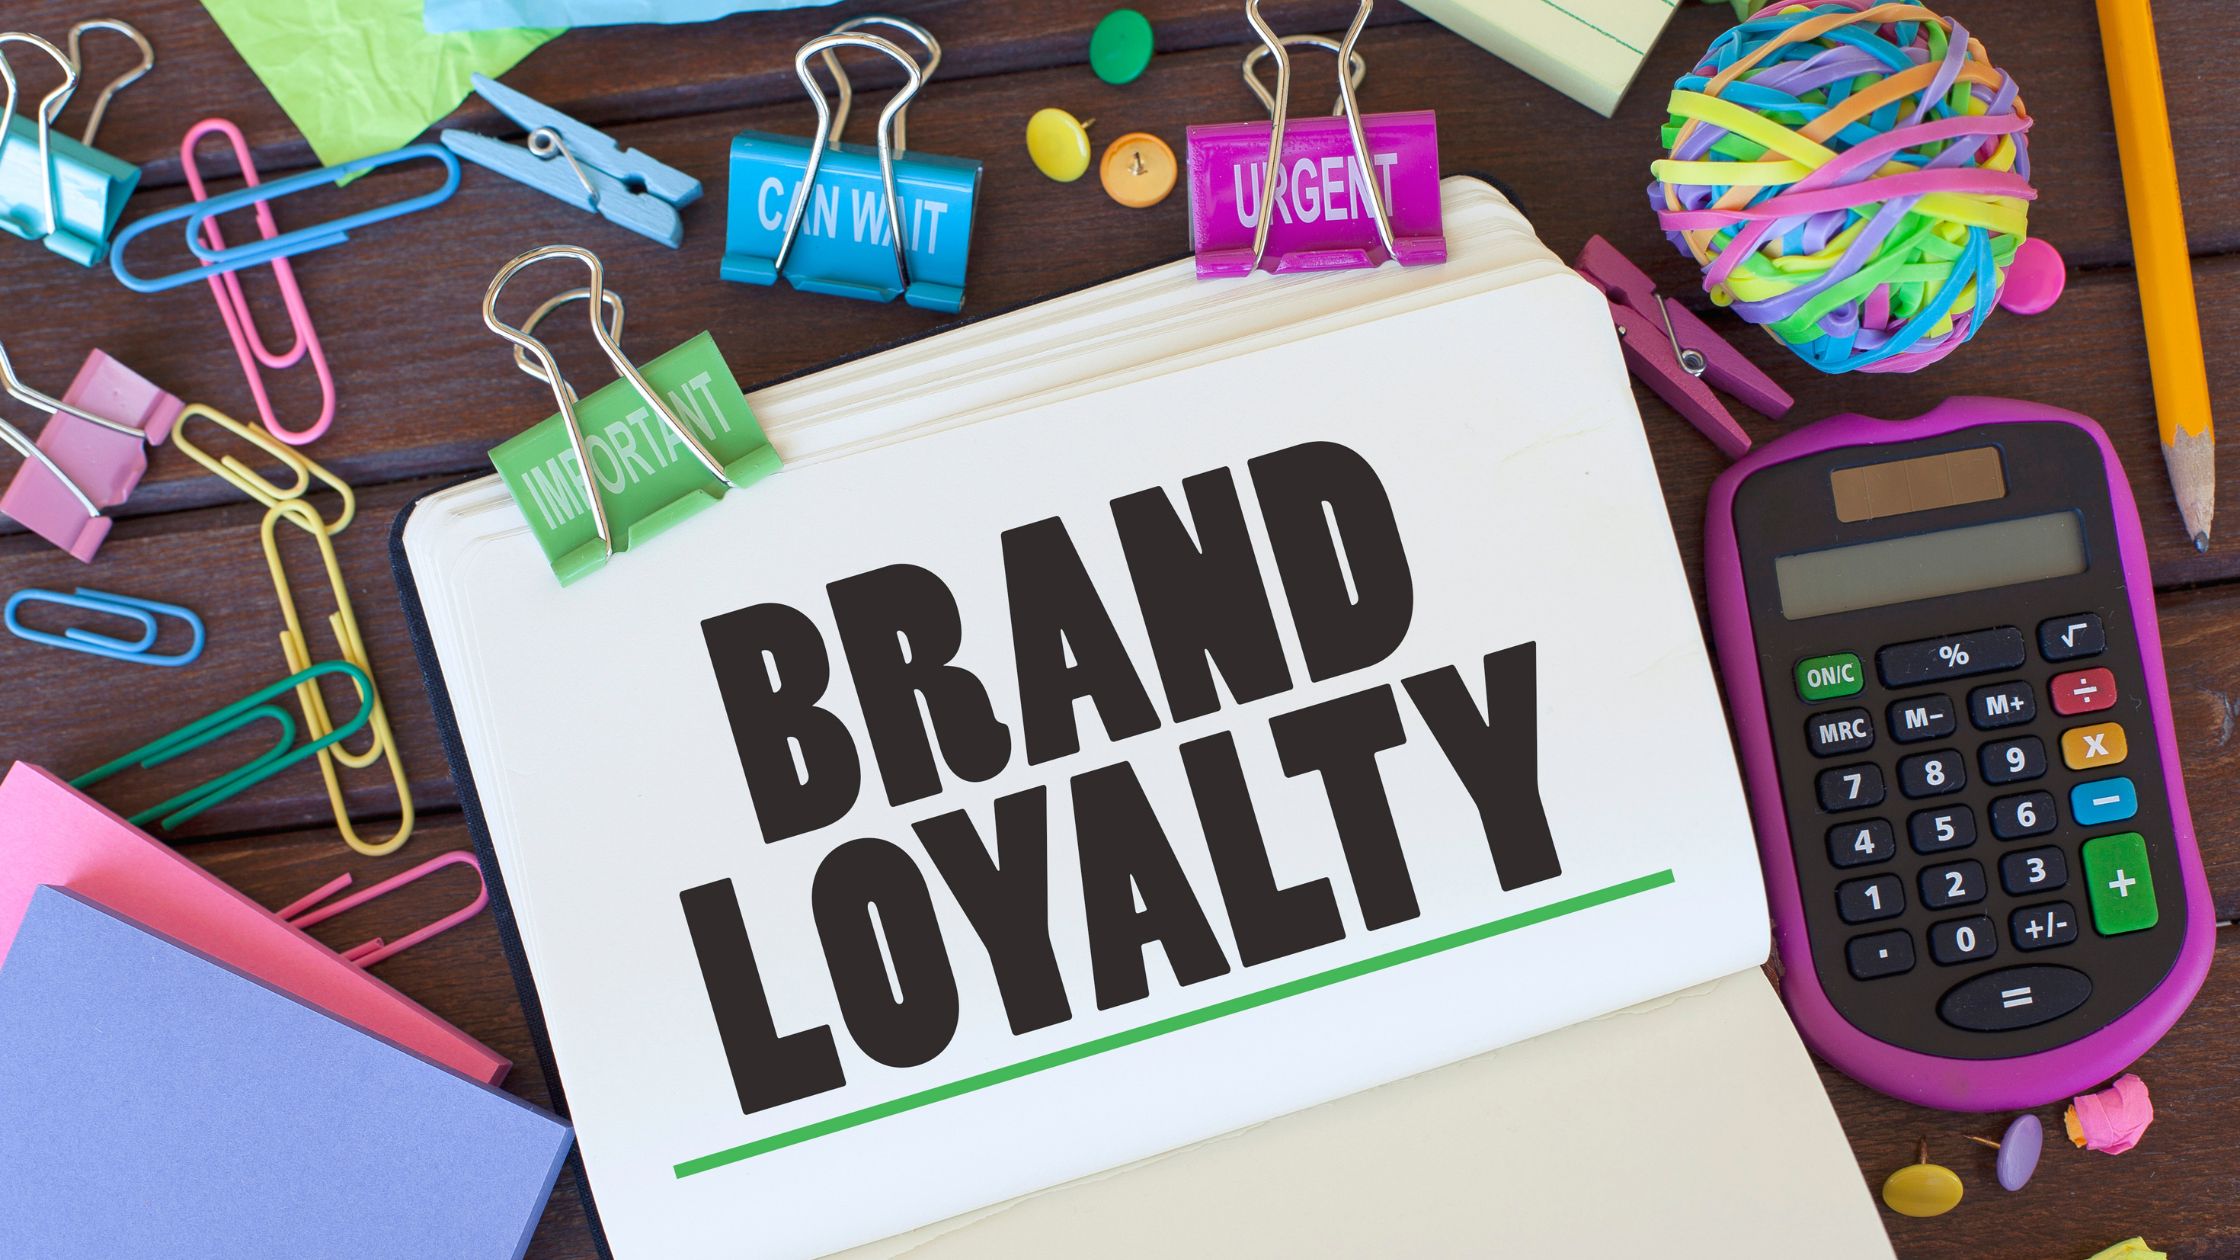 Brand_loyalty_come_ottenere_e_mantenere_la_fedeltà_dei_clienti